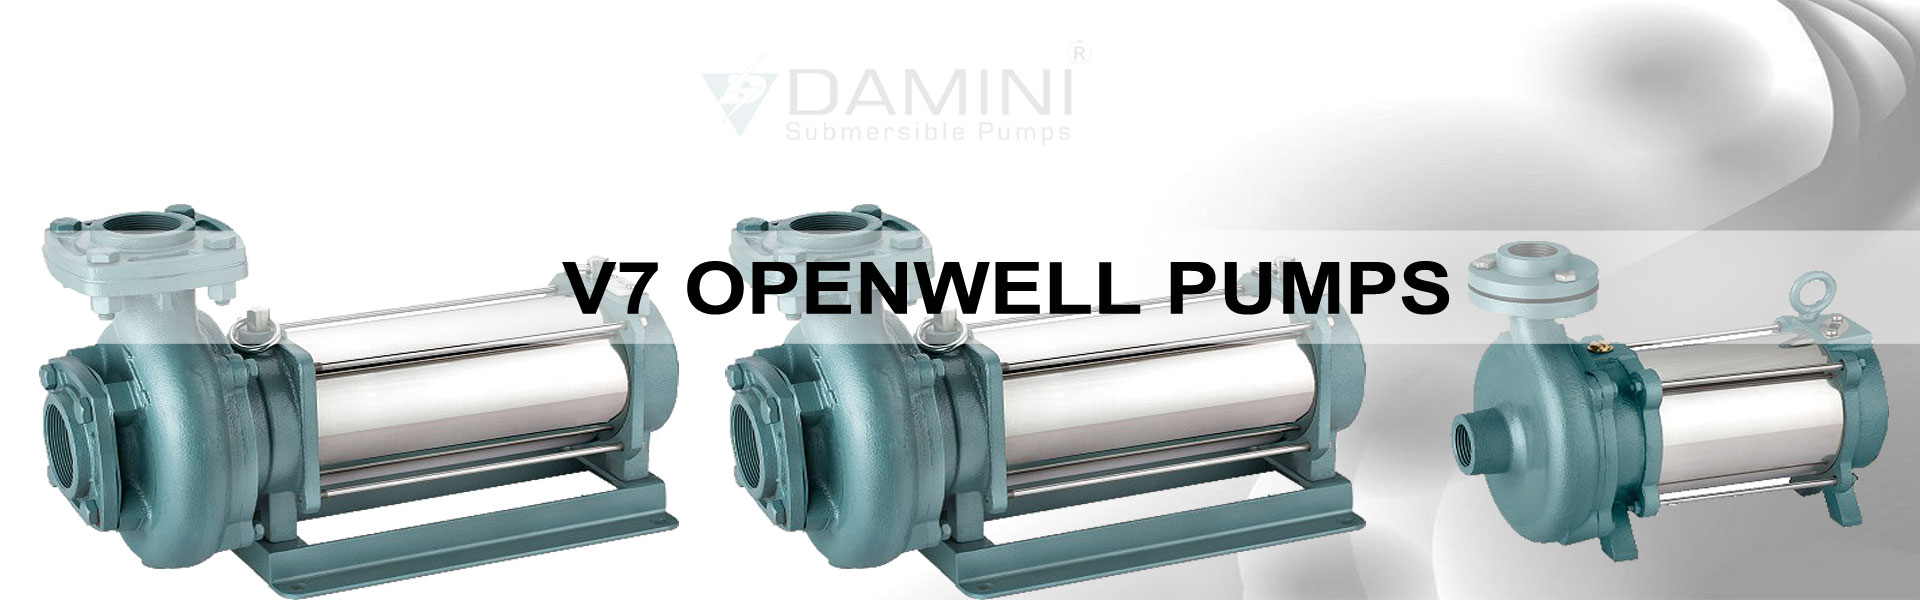 V7 Openwell Pumps